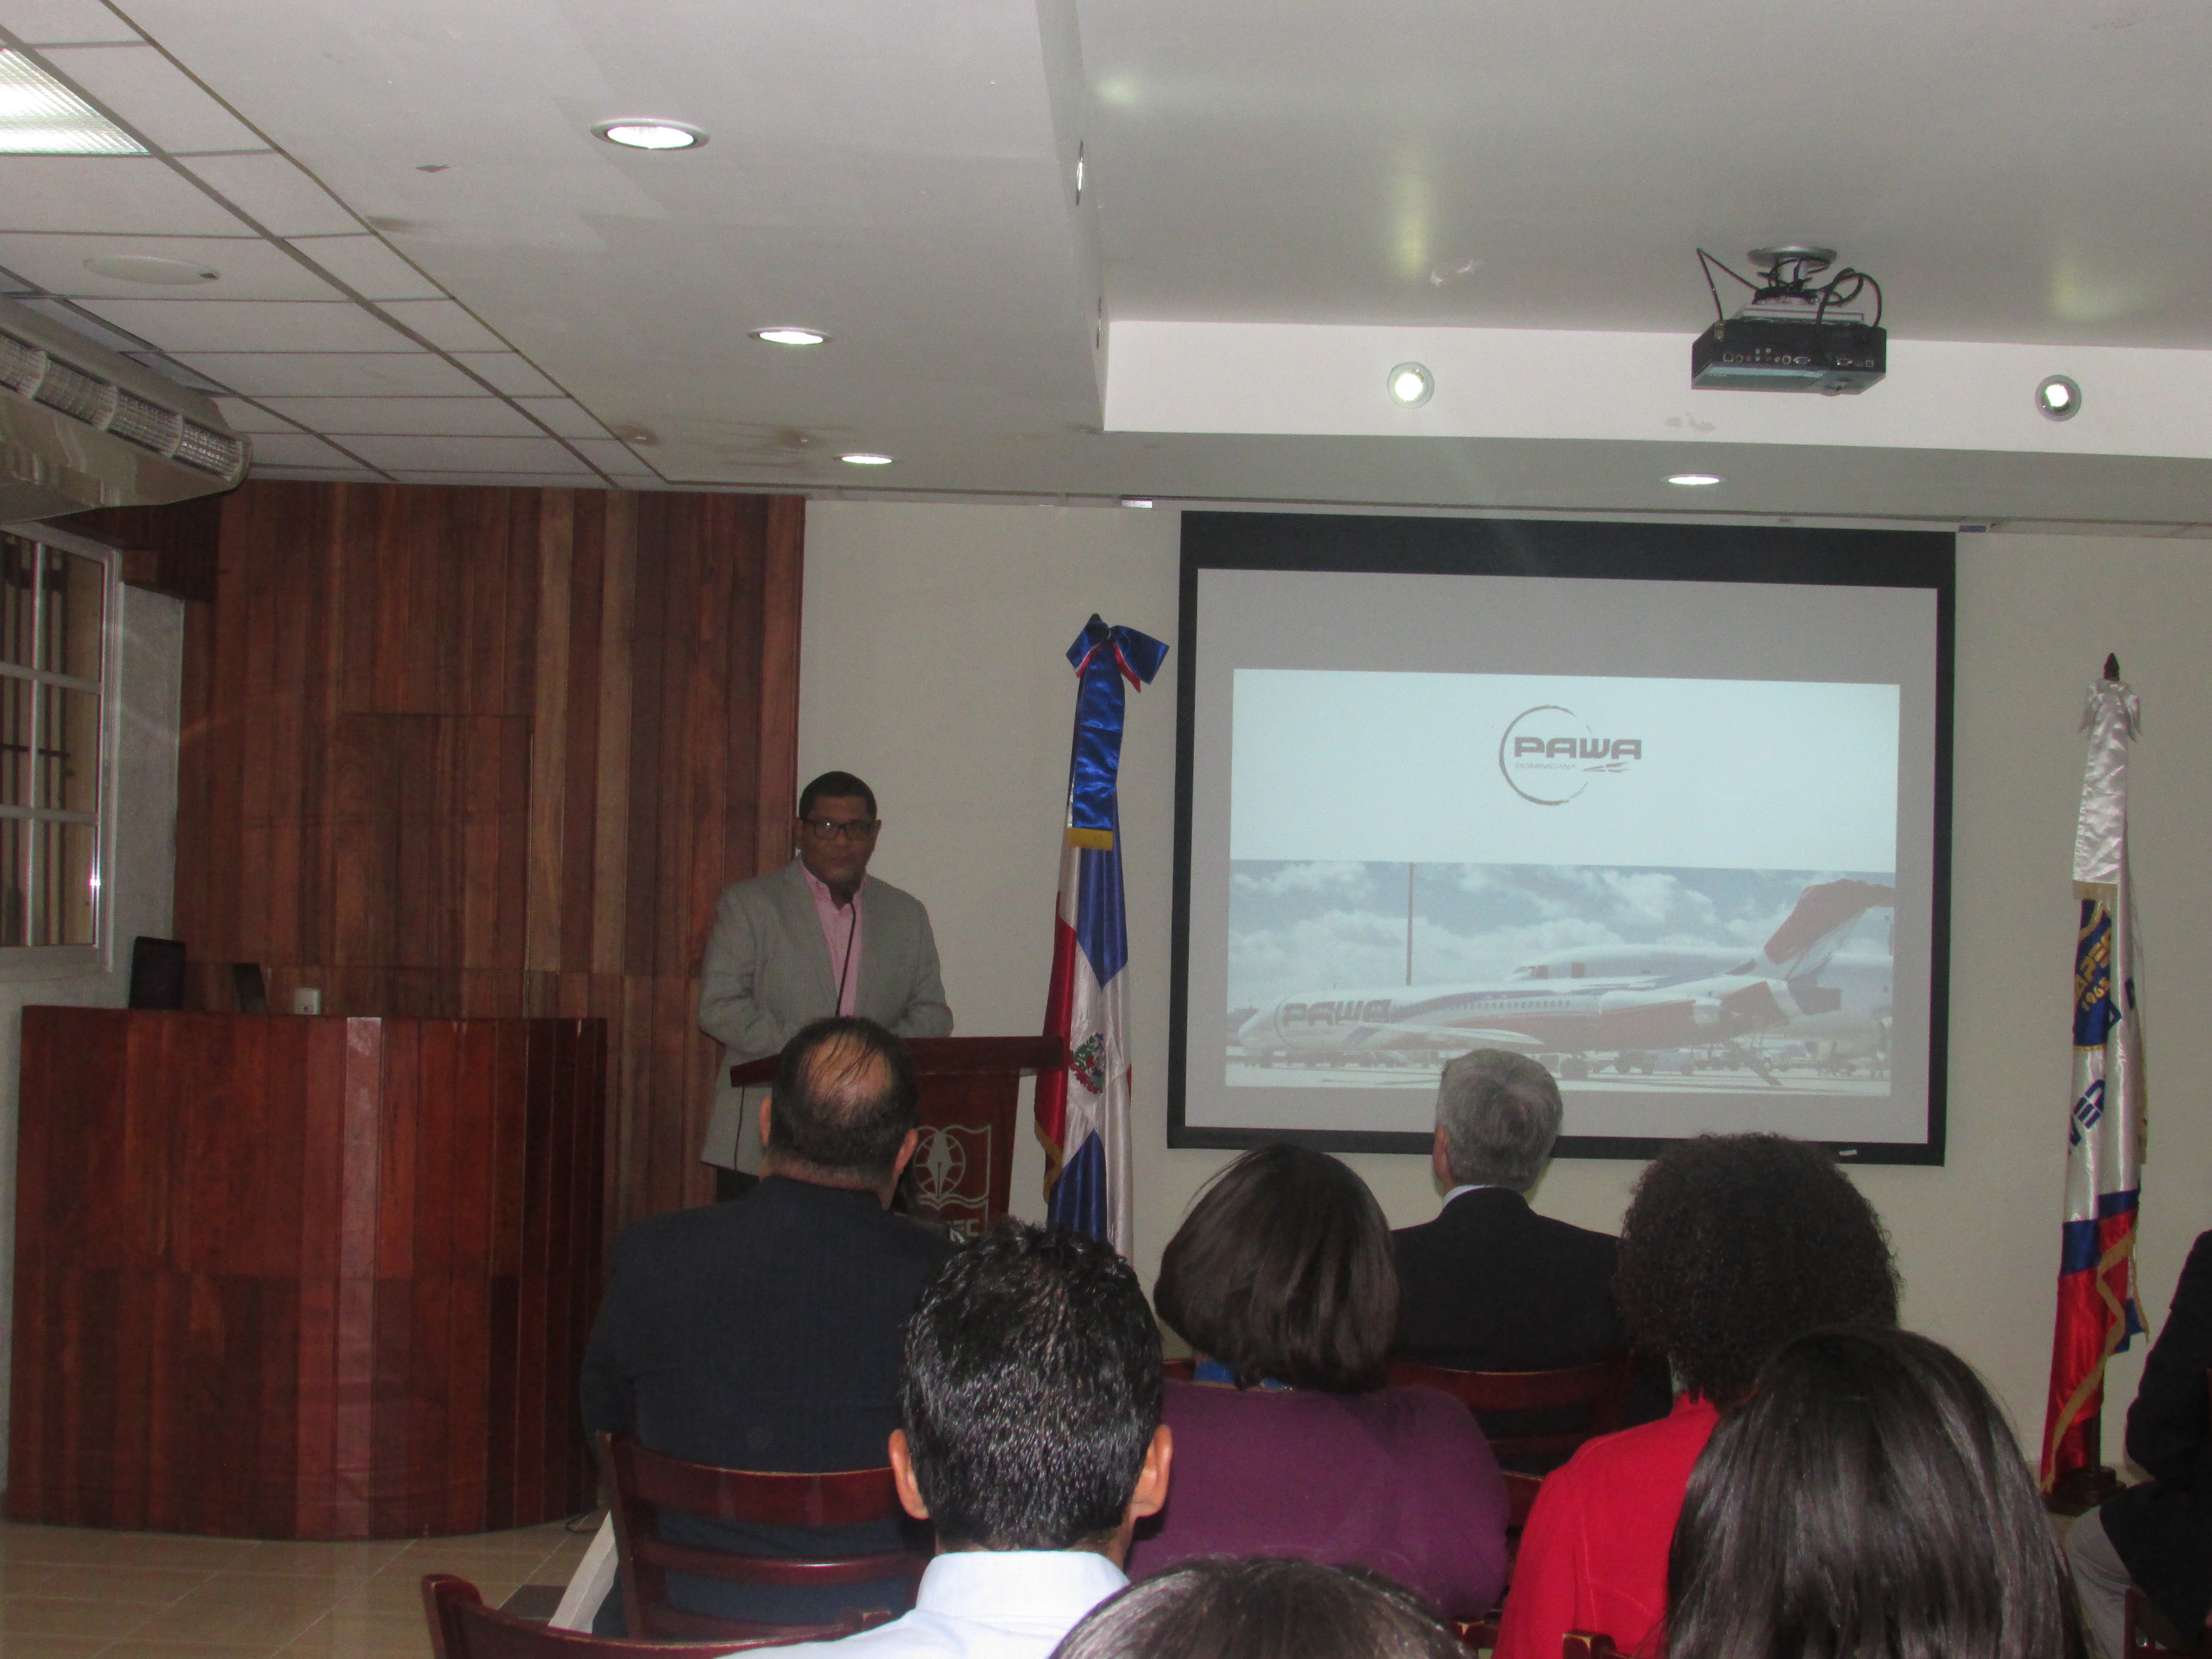 Momentos en el que fue presentada la propuesta de la aerolínea Pawa Dominicana.